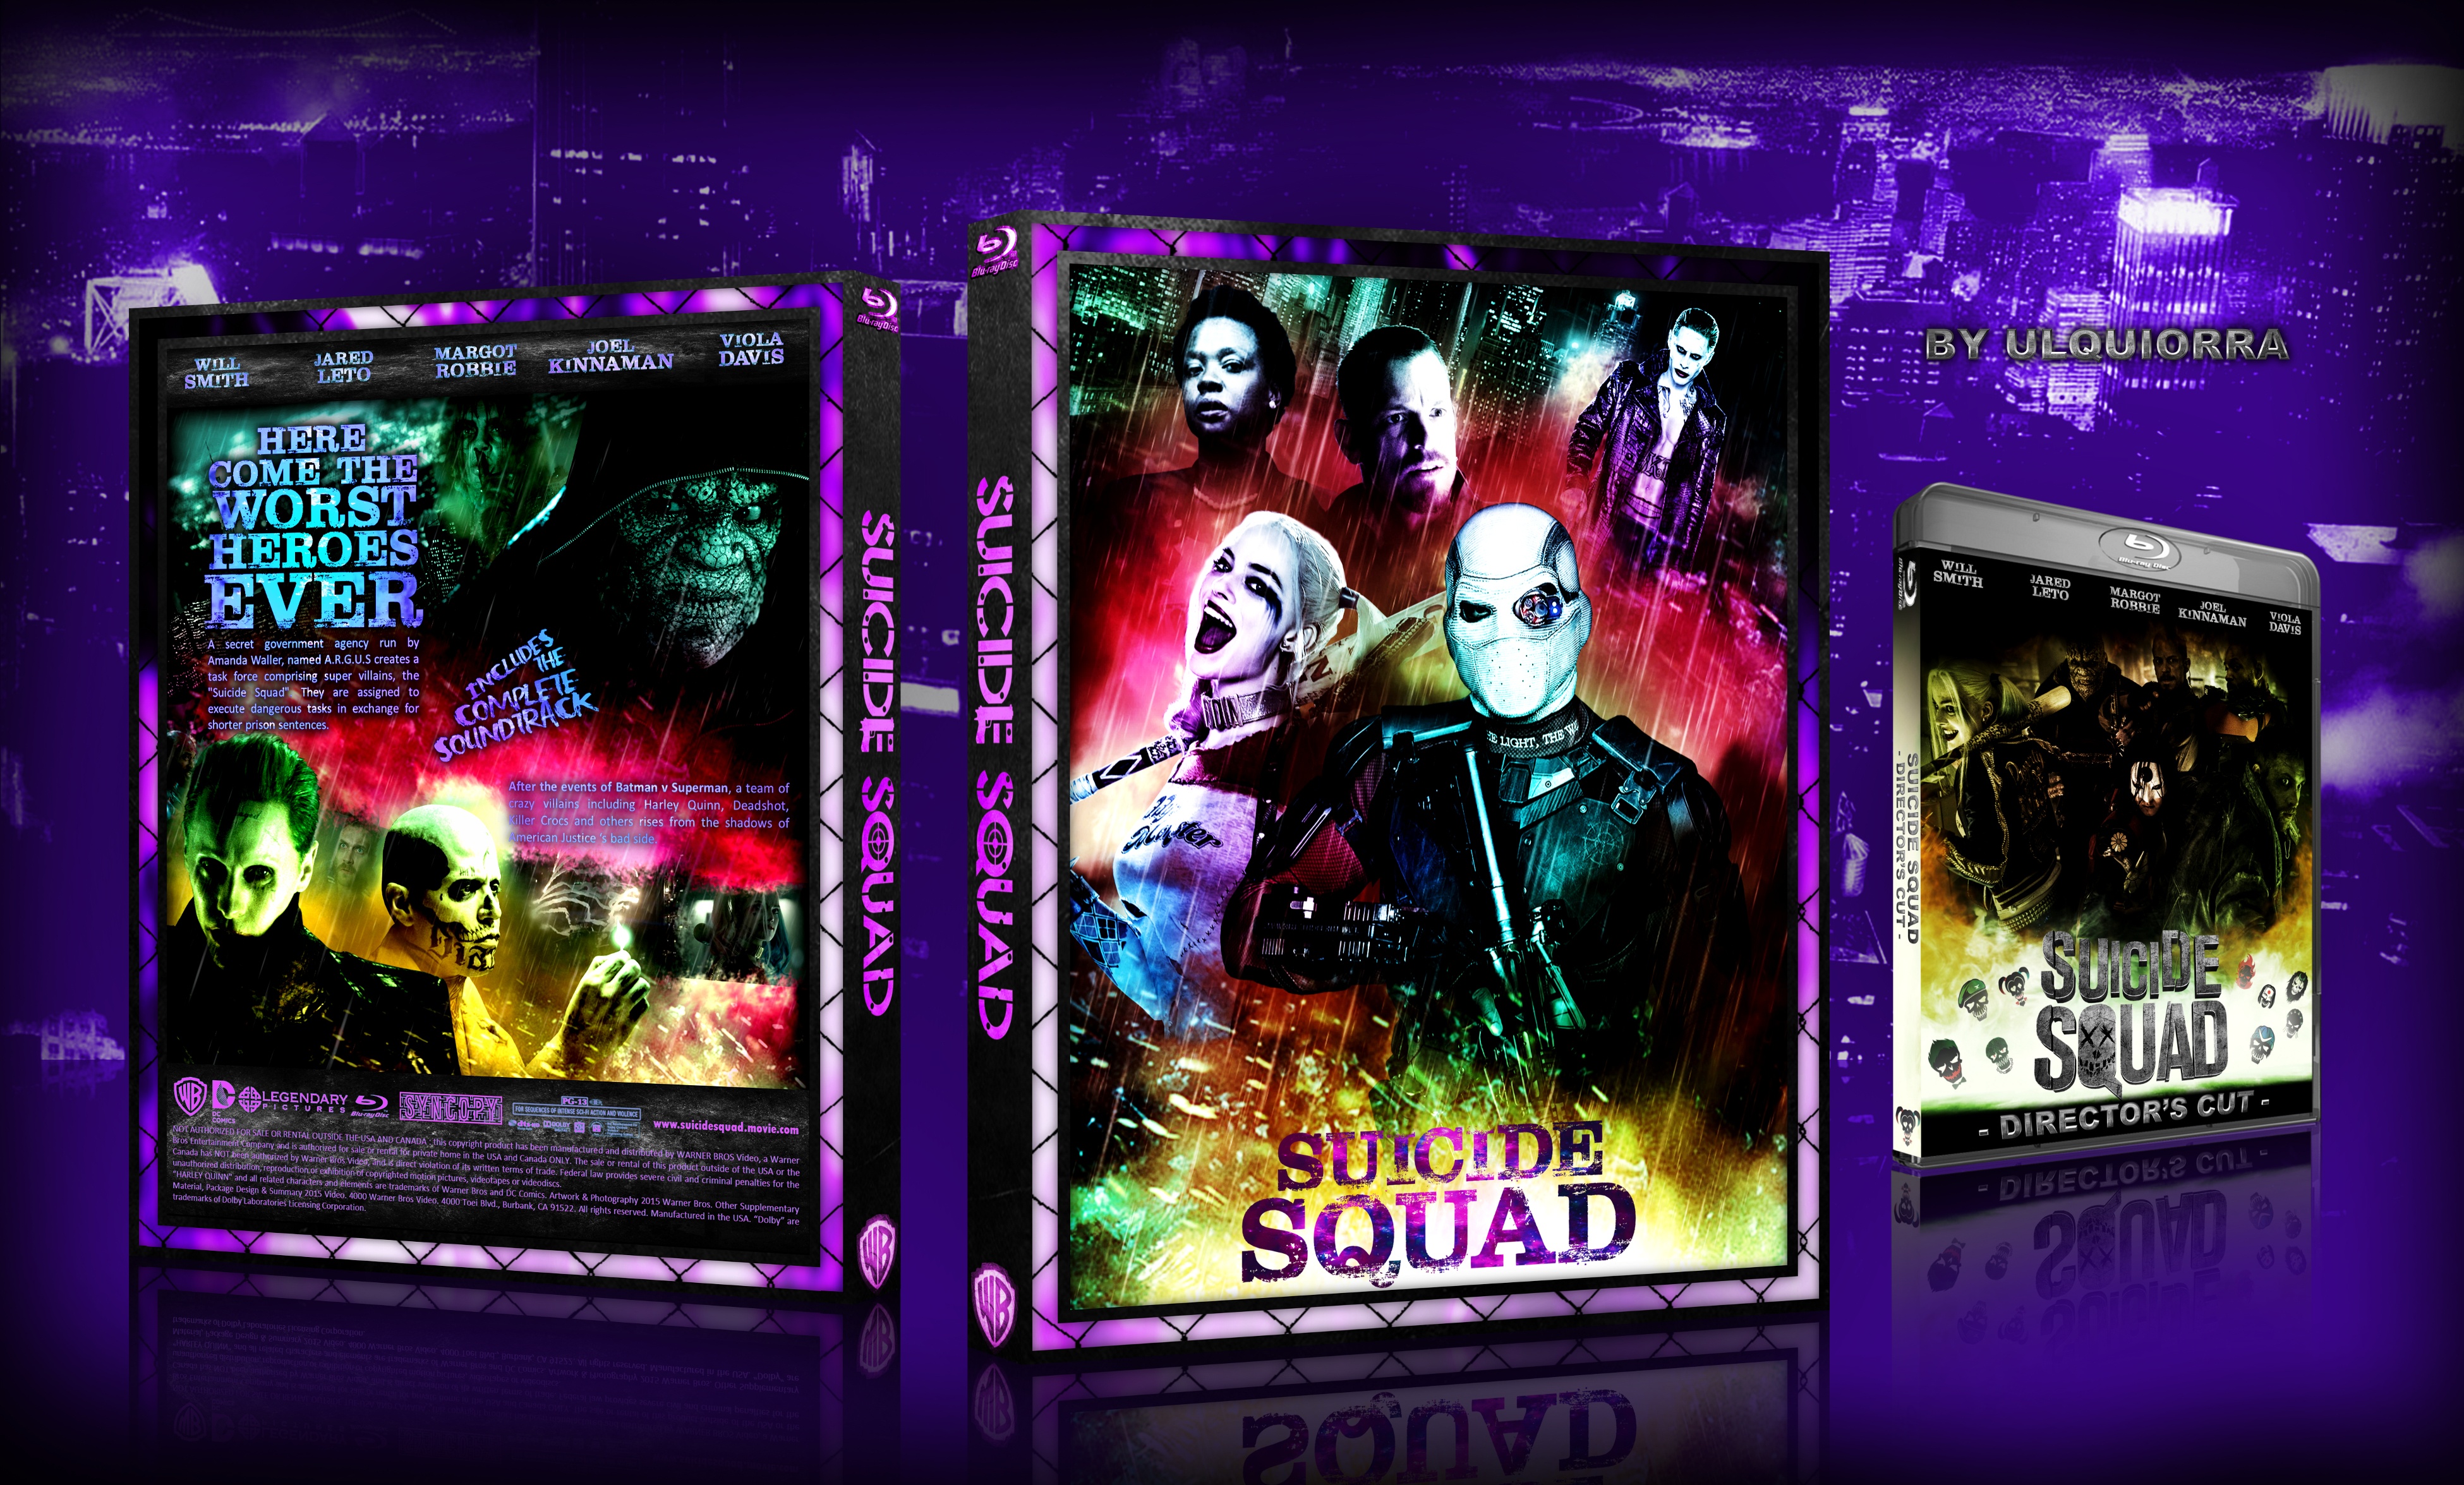 Suicide Squad box cover